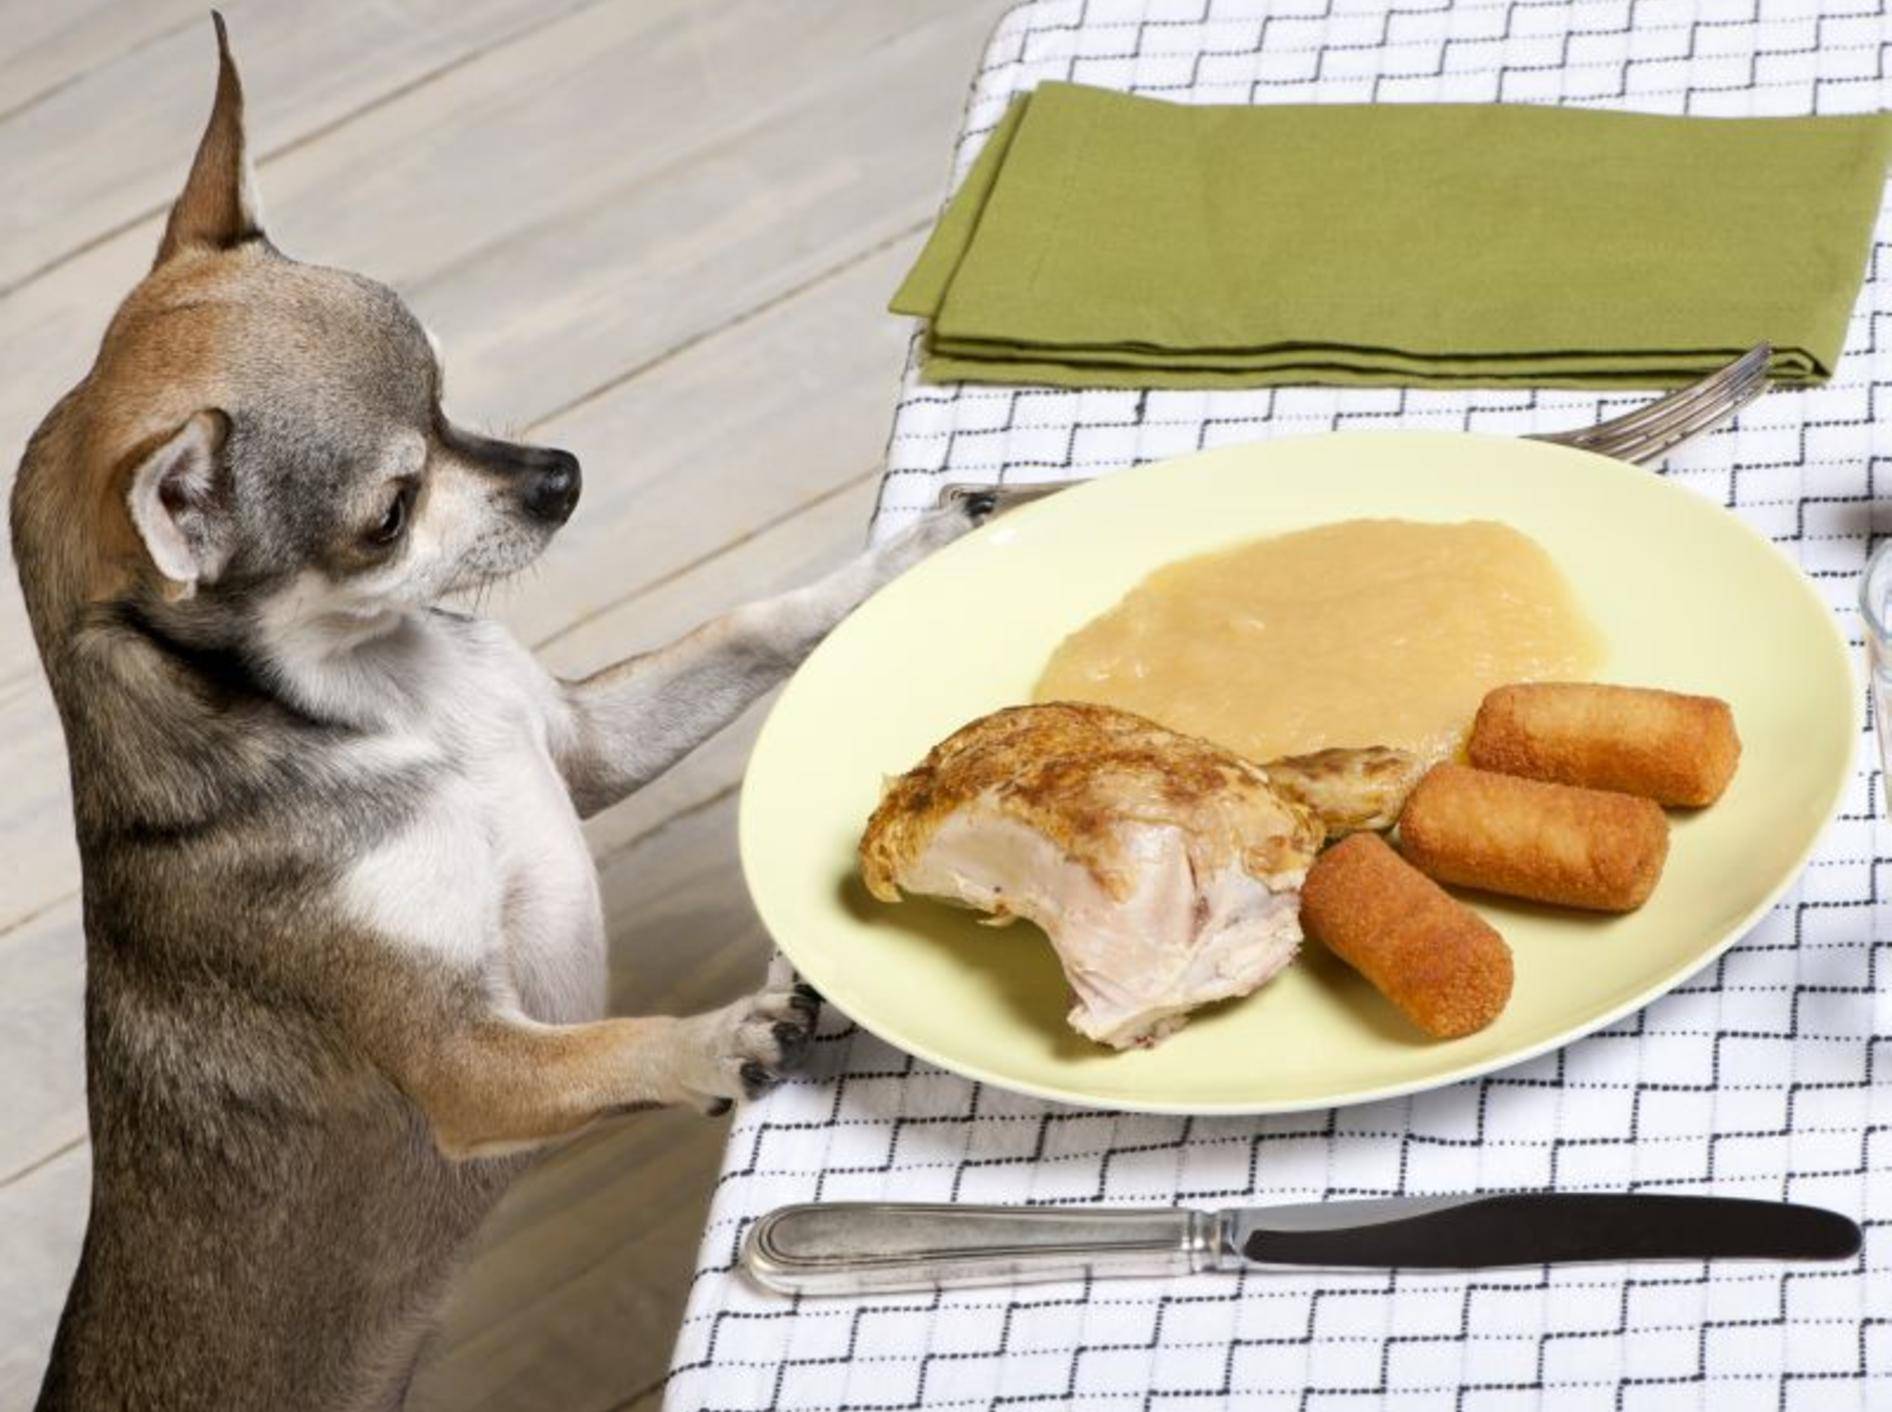 Lebensmittel, die Hunde nicht fressen sollten zu kennen ist wichtig — Bild: Shutterstock / Eric Isselee